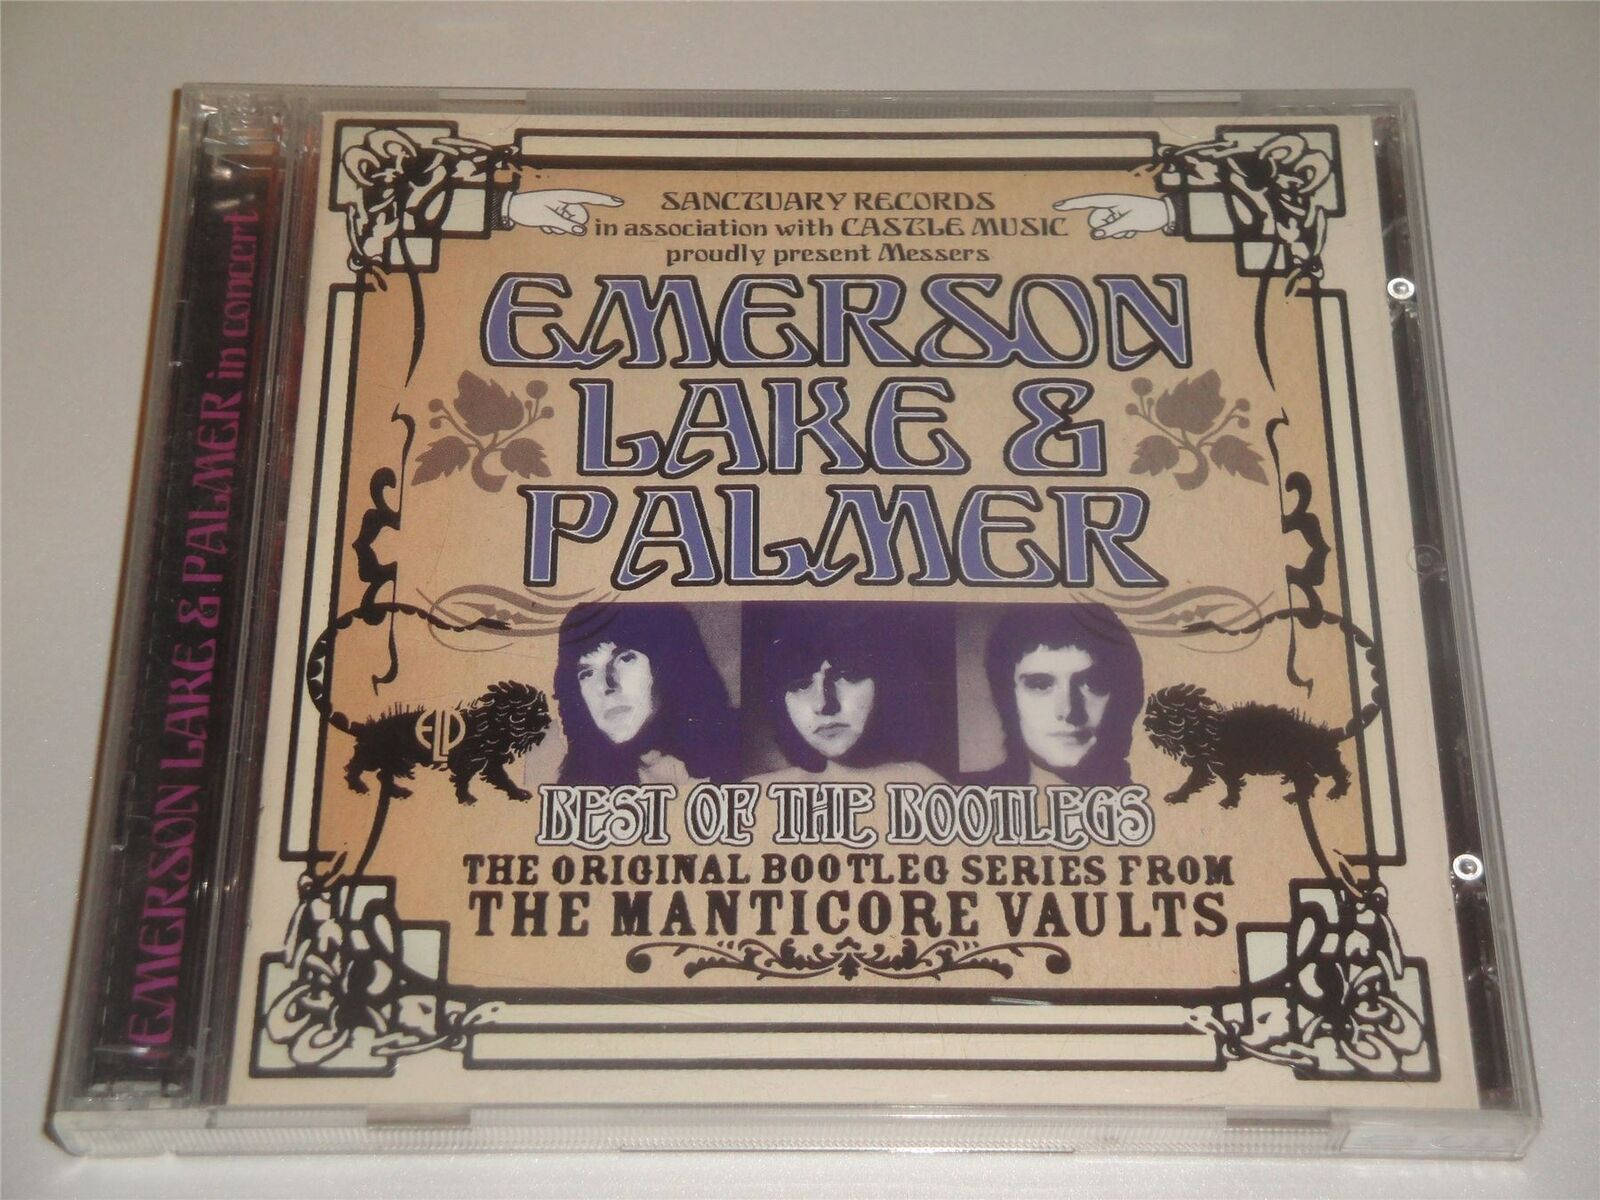 Emersonlake & Palmer Cd Migliori Bootlegs. Sfondo